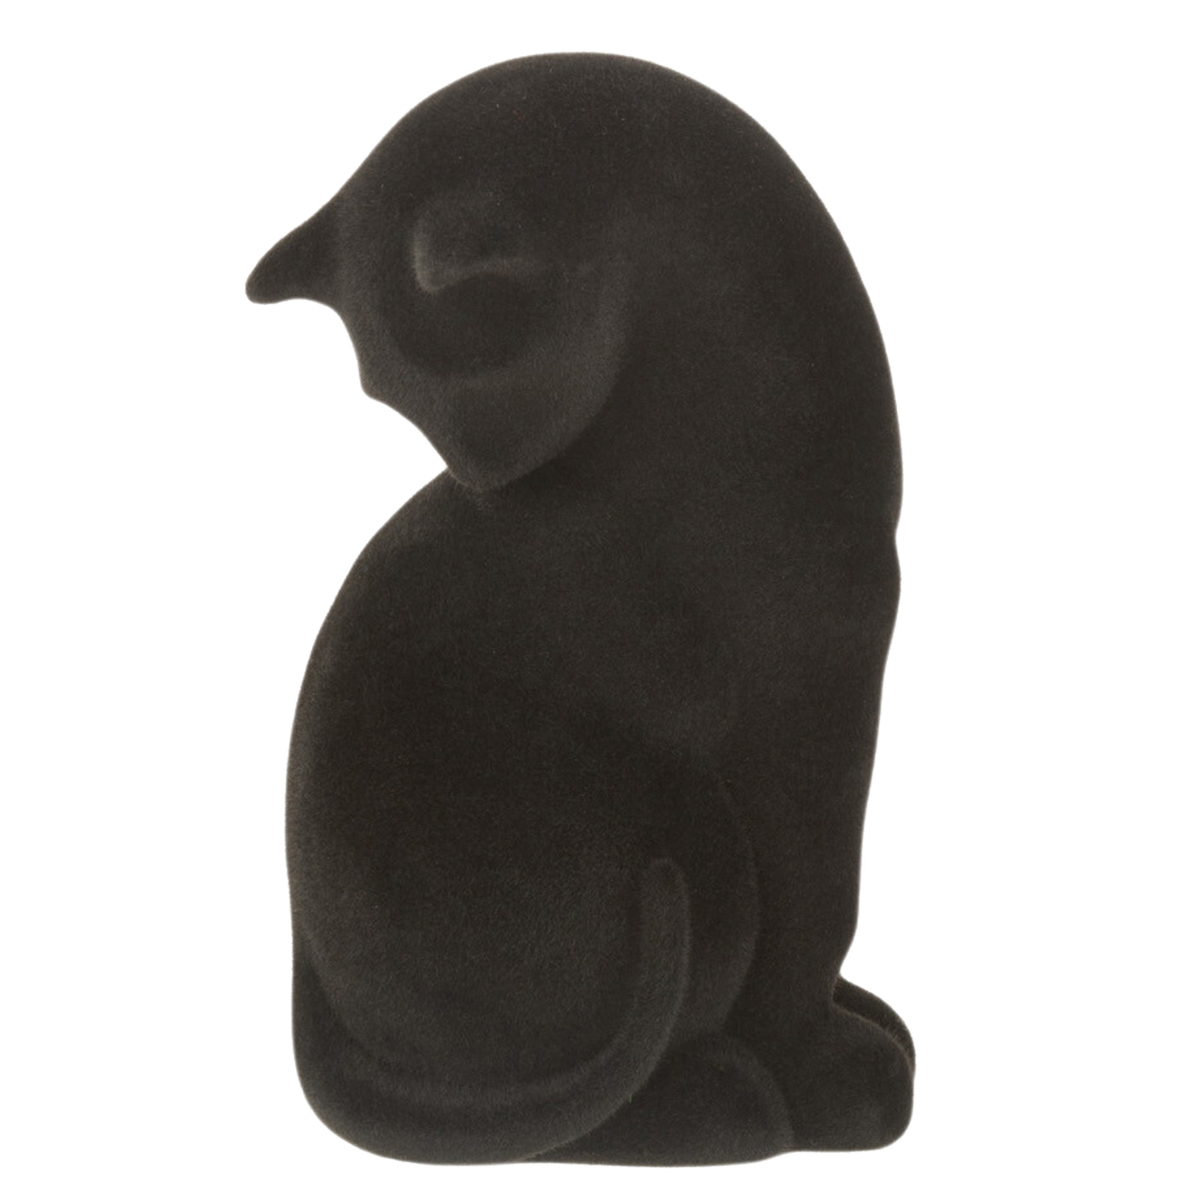 Cat bookend in black velvet resin